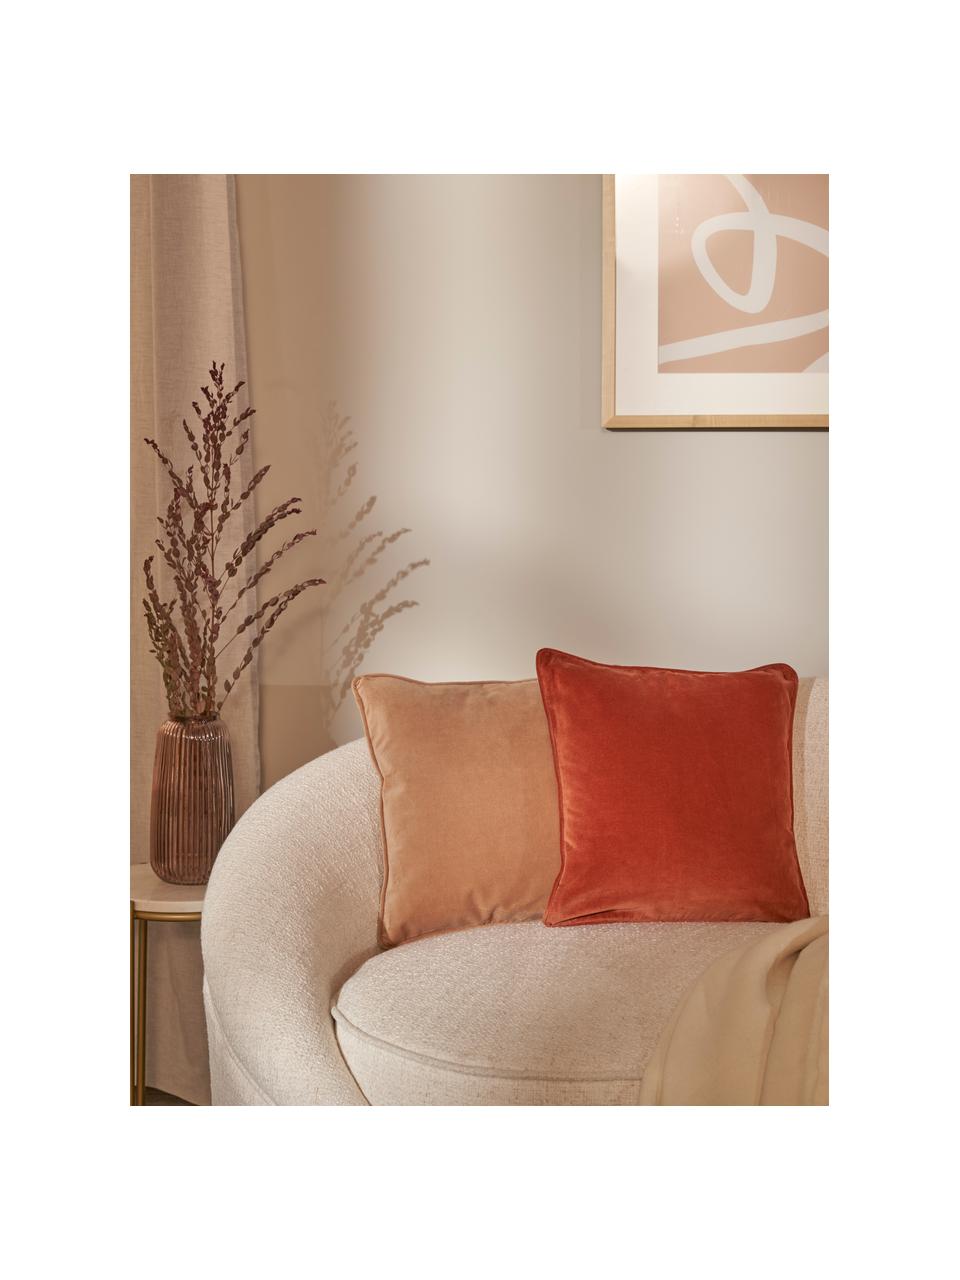 Poszewka na poduszkę z aksamitu Dana, 100% aksamit bawełniany, Rdzawoczerwony, S 40 x D 40 cm